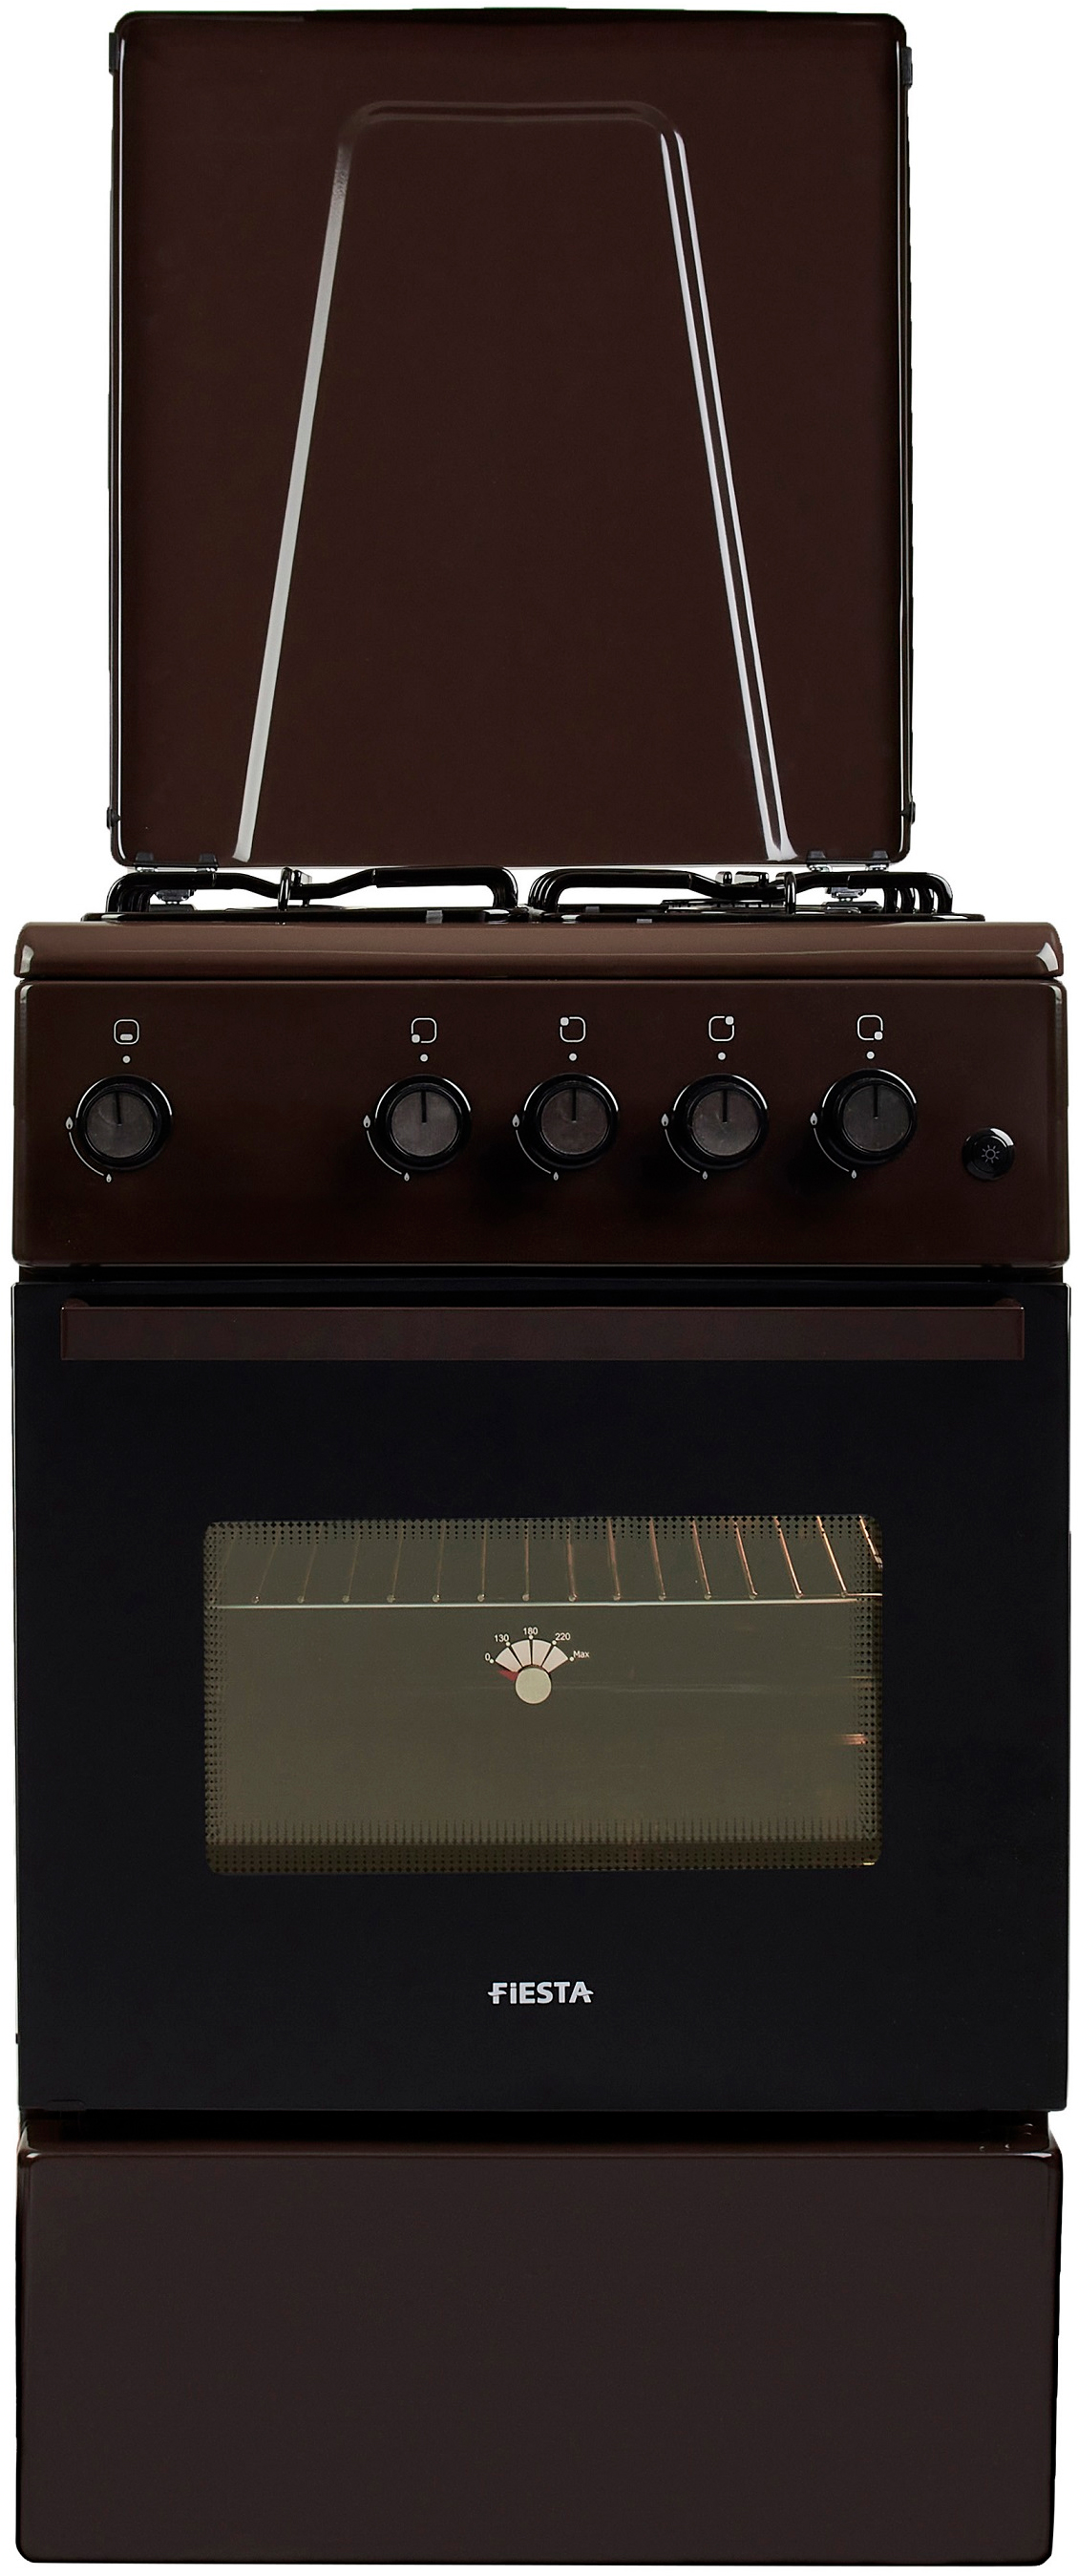 Отзывы кухонная плита Fiesta G 5403 SD-B